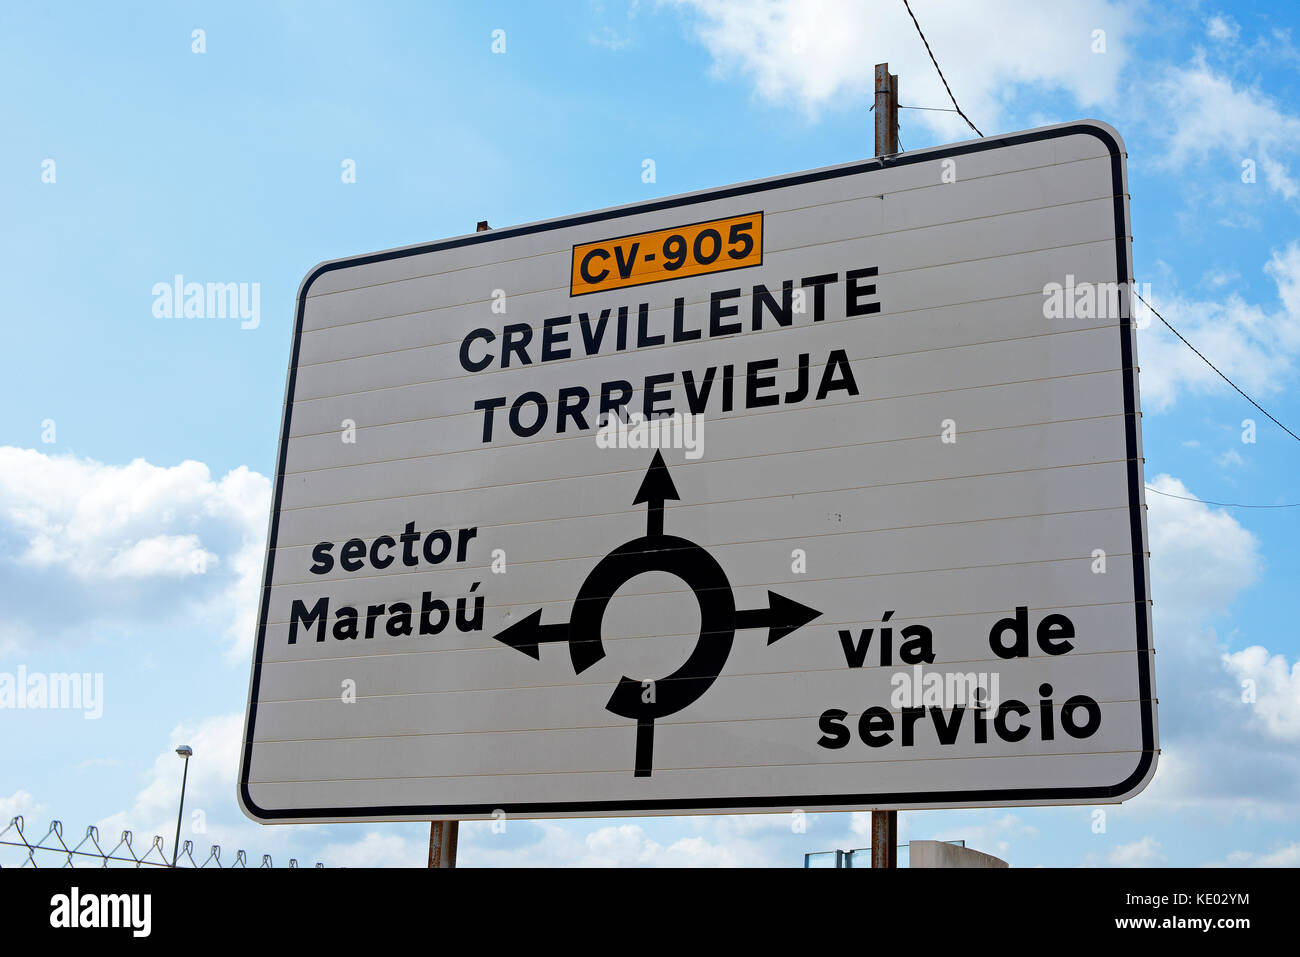 Spanisches Straßenschild für CV-905 Torrevieja Crevillente Via de servicio Zufahrtsstraße . Kreisverkehr. Reiseziele in Spanien Stockfoto